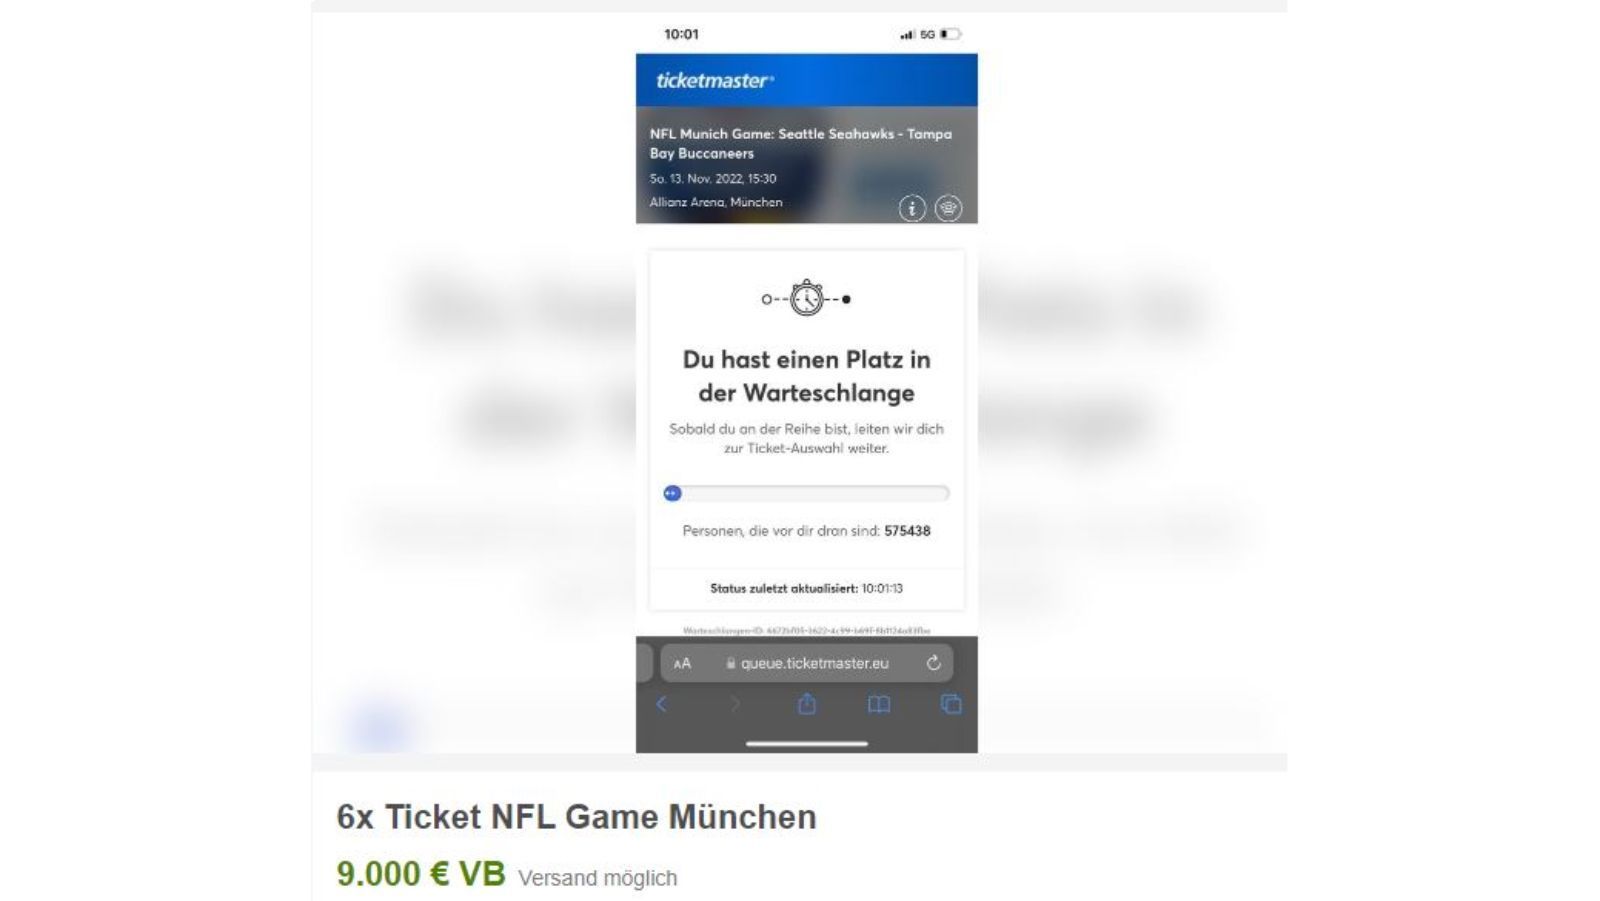 
                <strong>Horrende eBay-Angebote für das NFL-Spiel in Deutschland</strong><br>
                9.000 Euro für sechs Tickets? Schnapper!
              